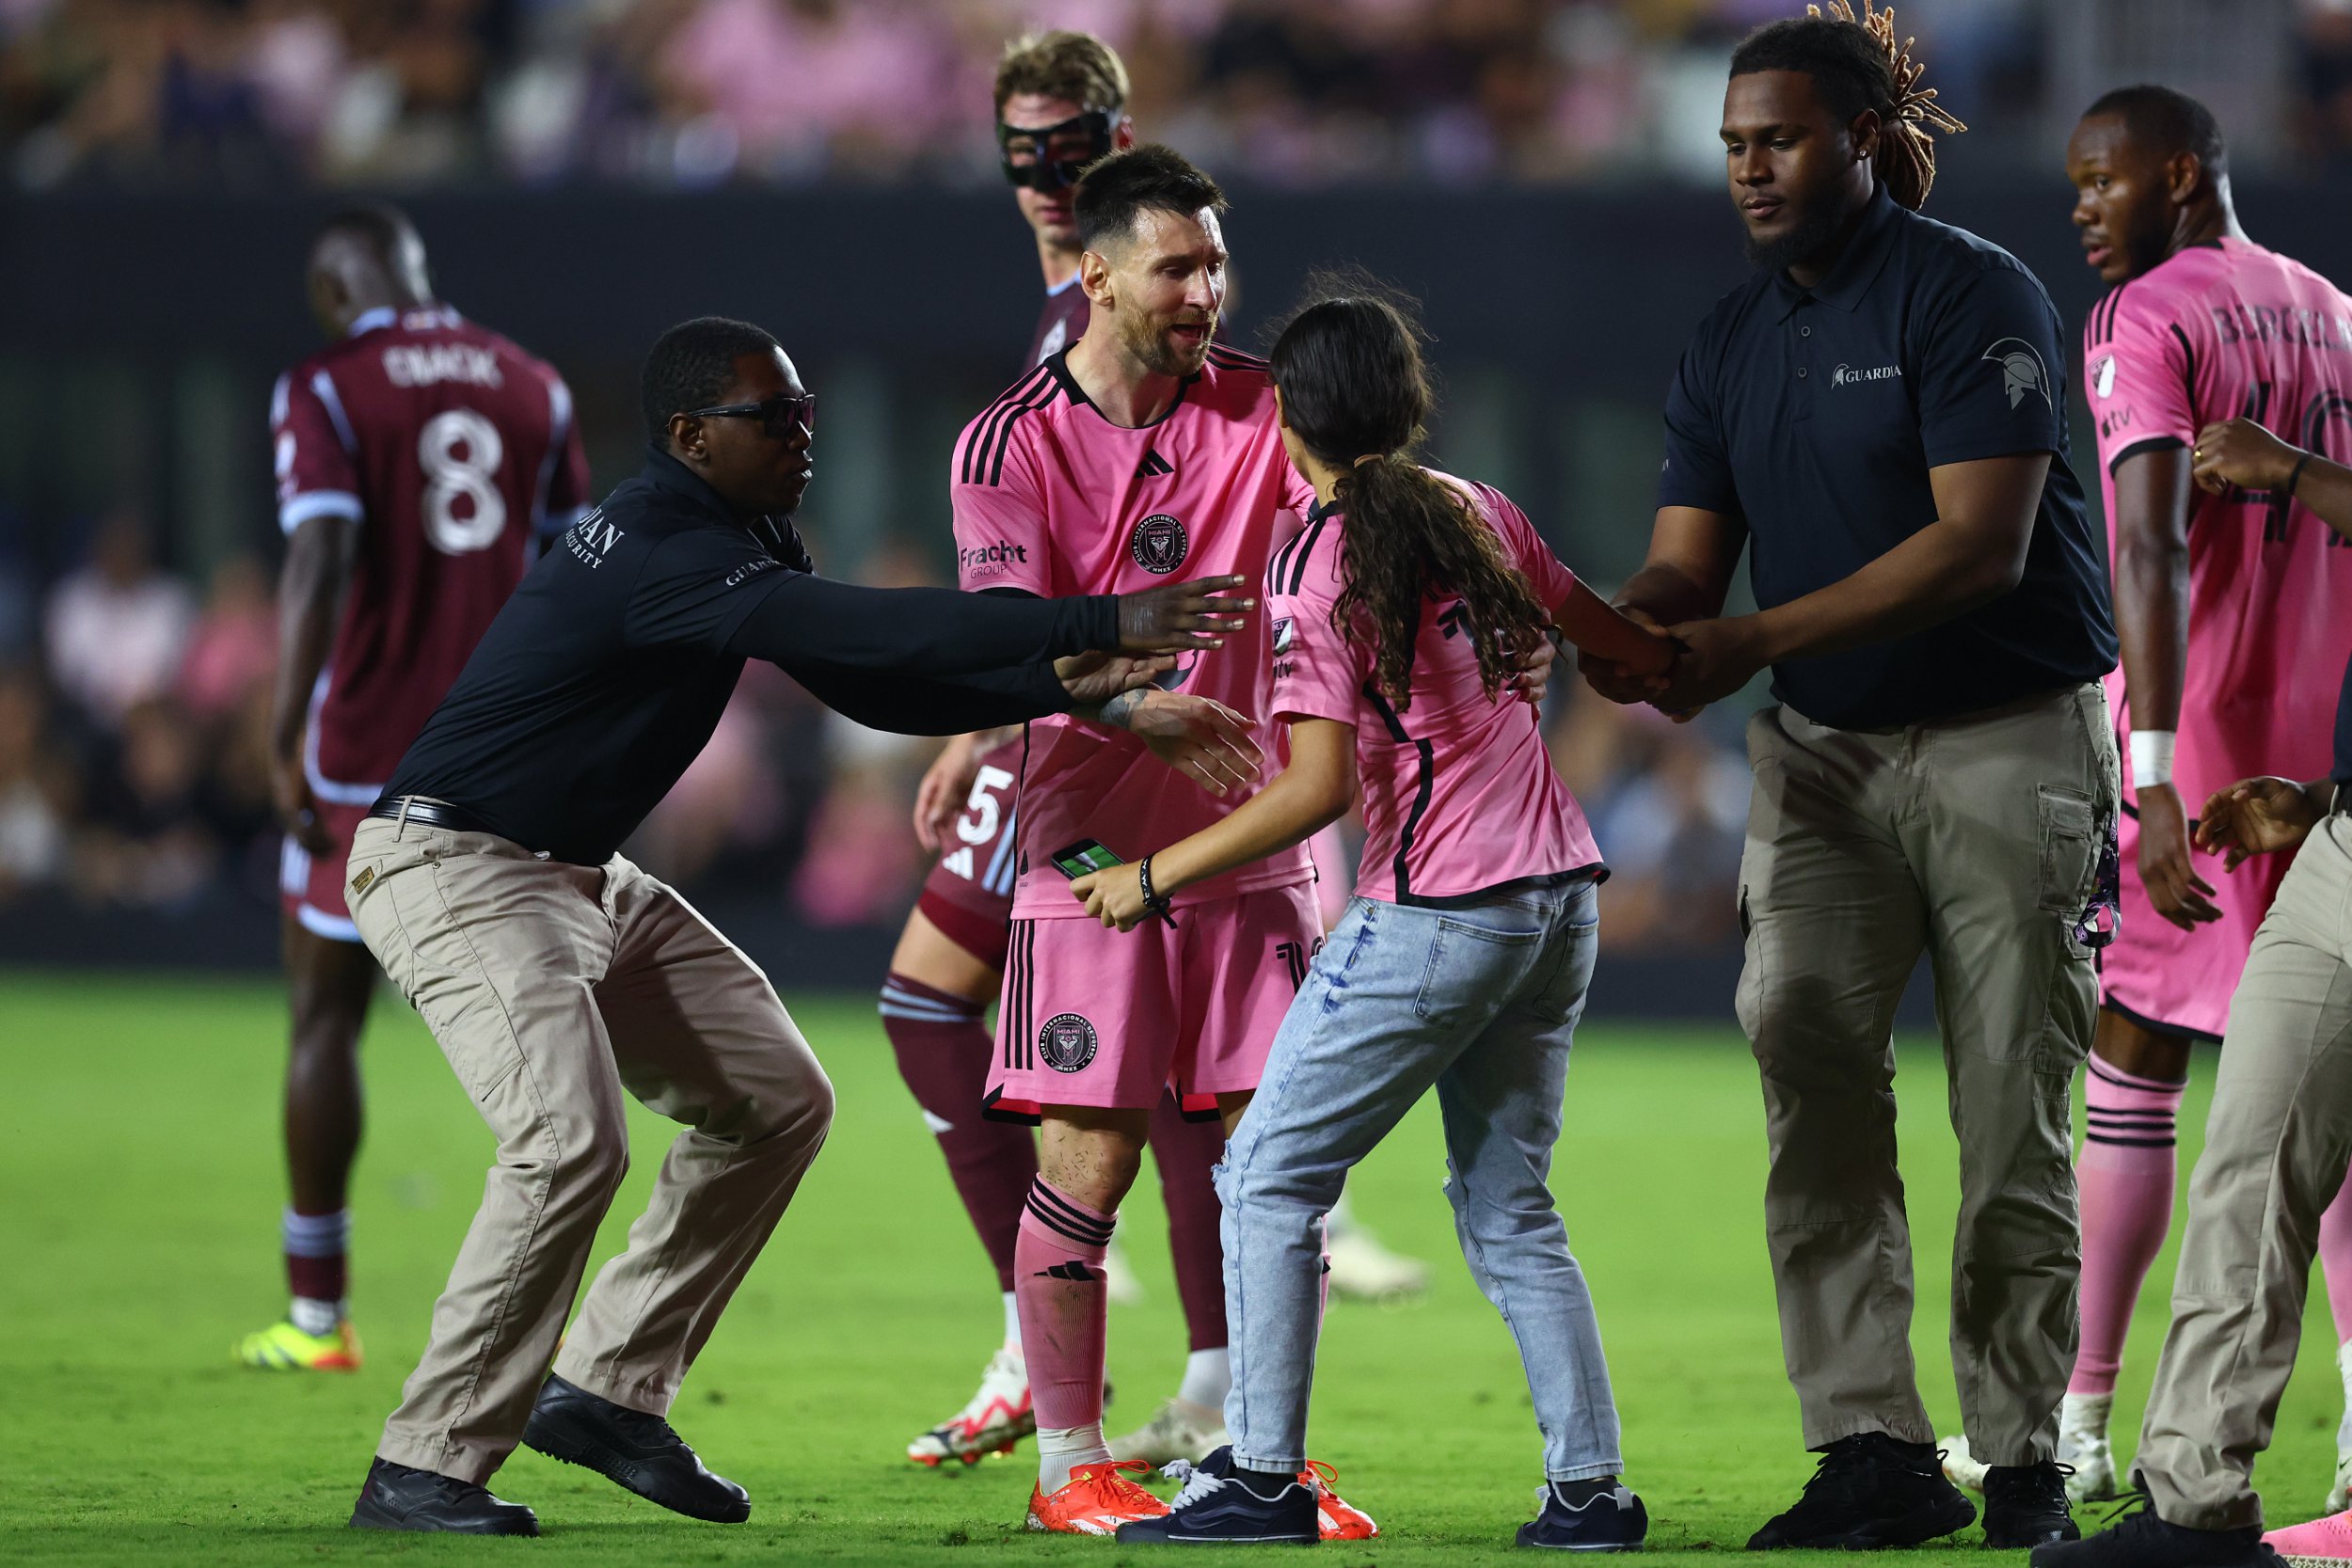 Der Fan rannte auf das Spielfeld, um ein Foto mit Messi zu machen